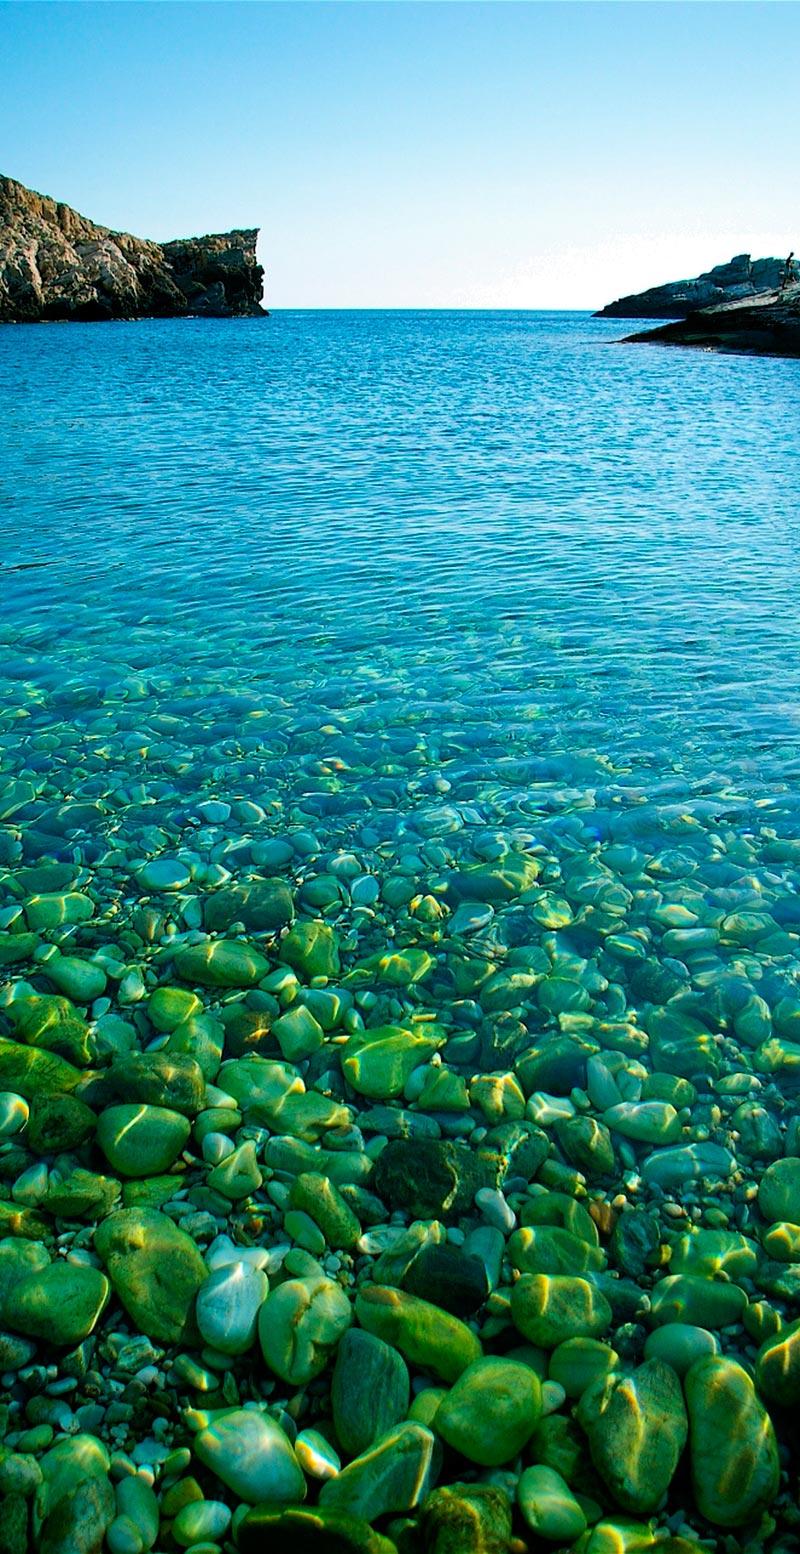 Livadaki Beach på Folegandros har stora stenar och kristallklart vatten.